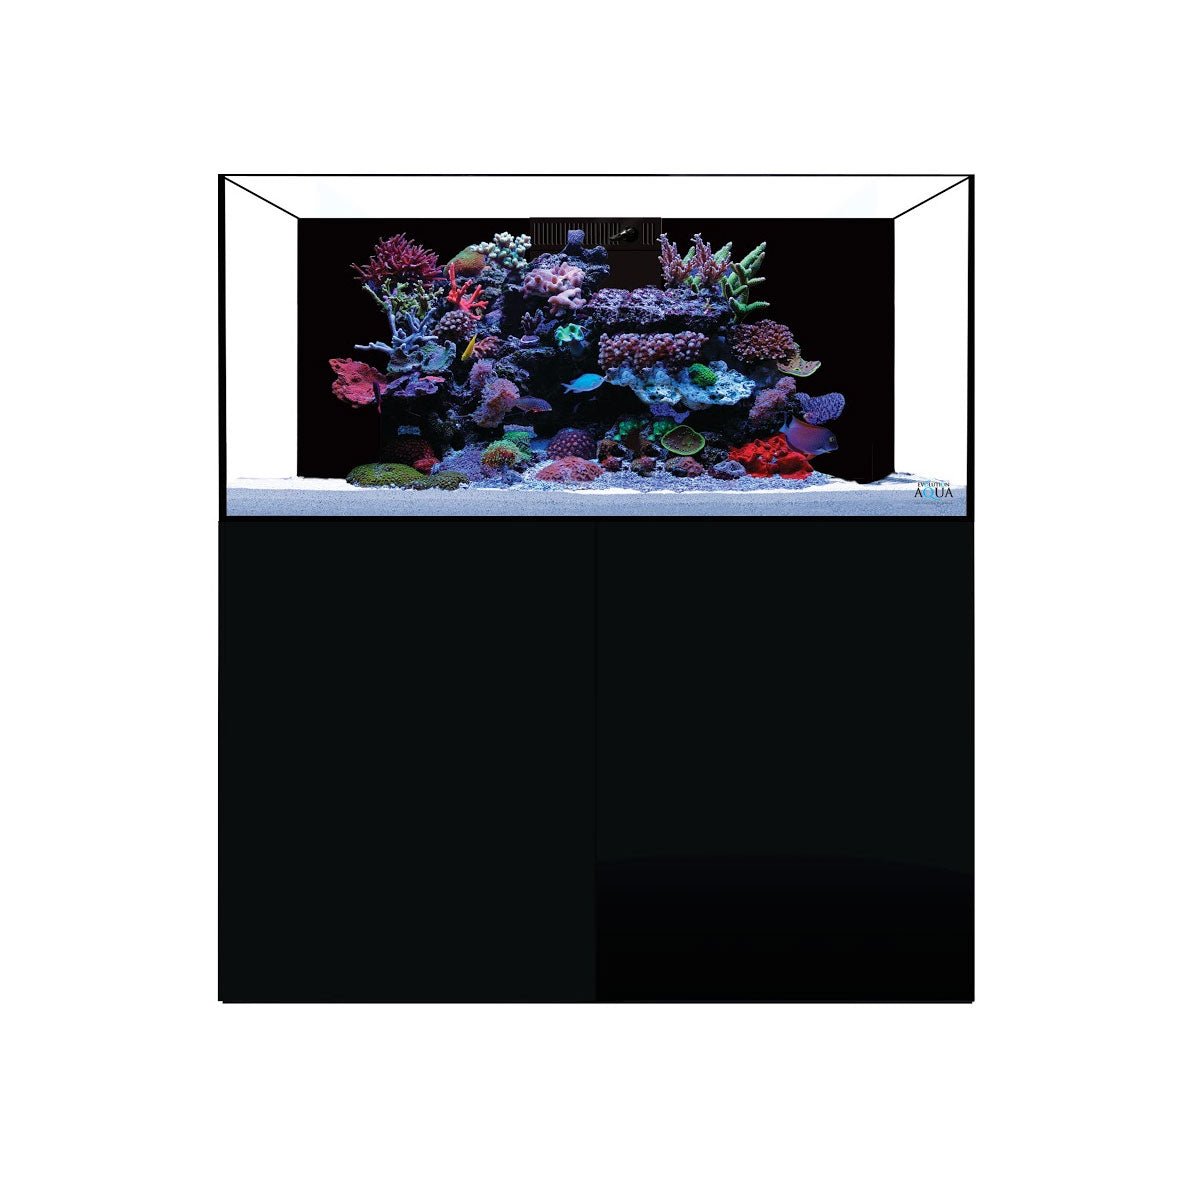 D-D Aqua-Pro Reef 1200 - Gloss Anthracite - AquaFrame Cabinet - Charterhouse Aquatics